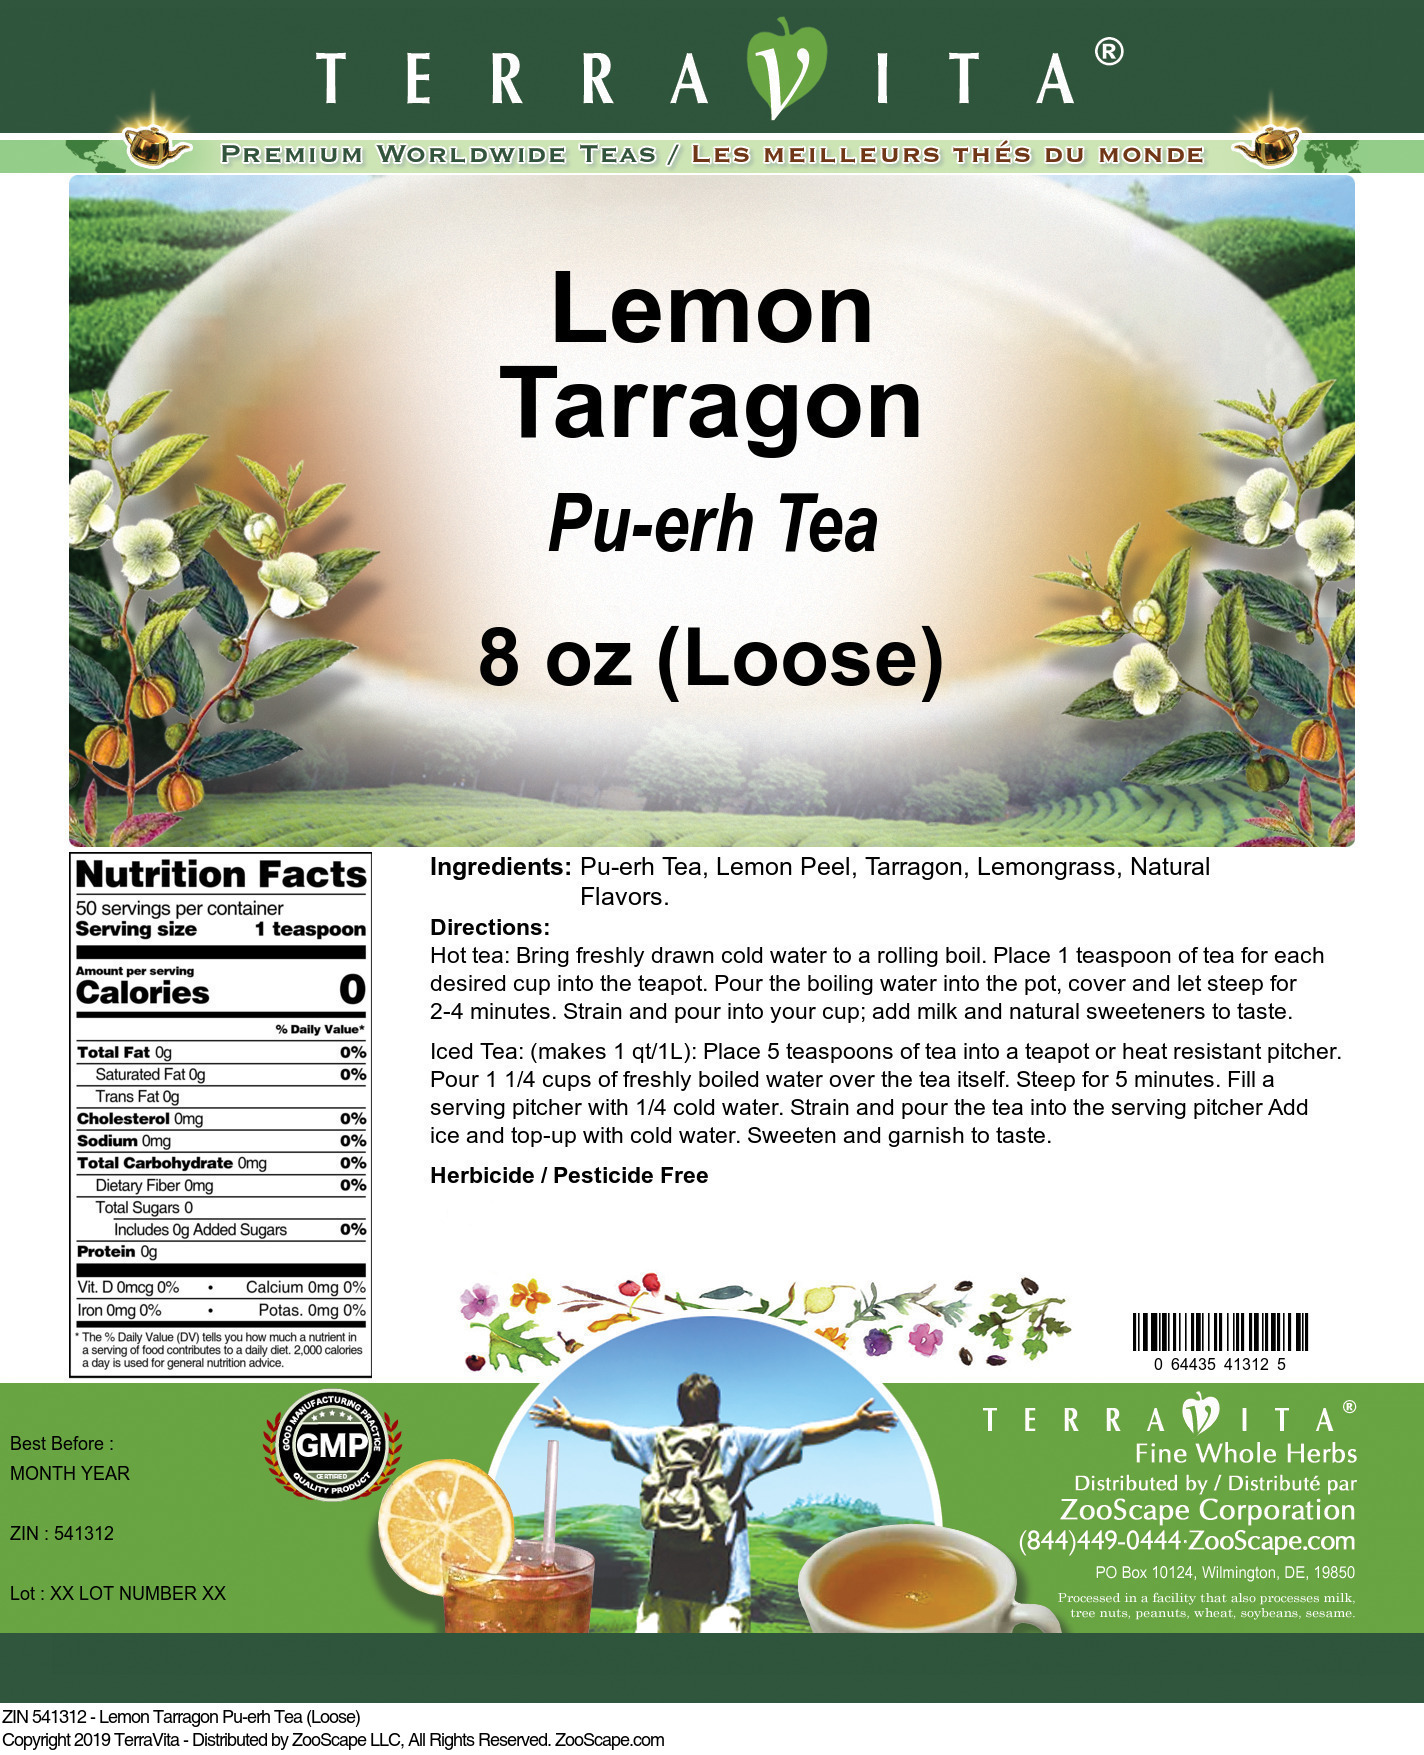 Lemon Tarragon Pu-erh Tea (Loose) - Label